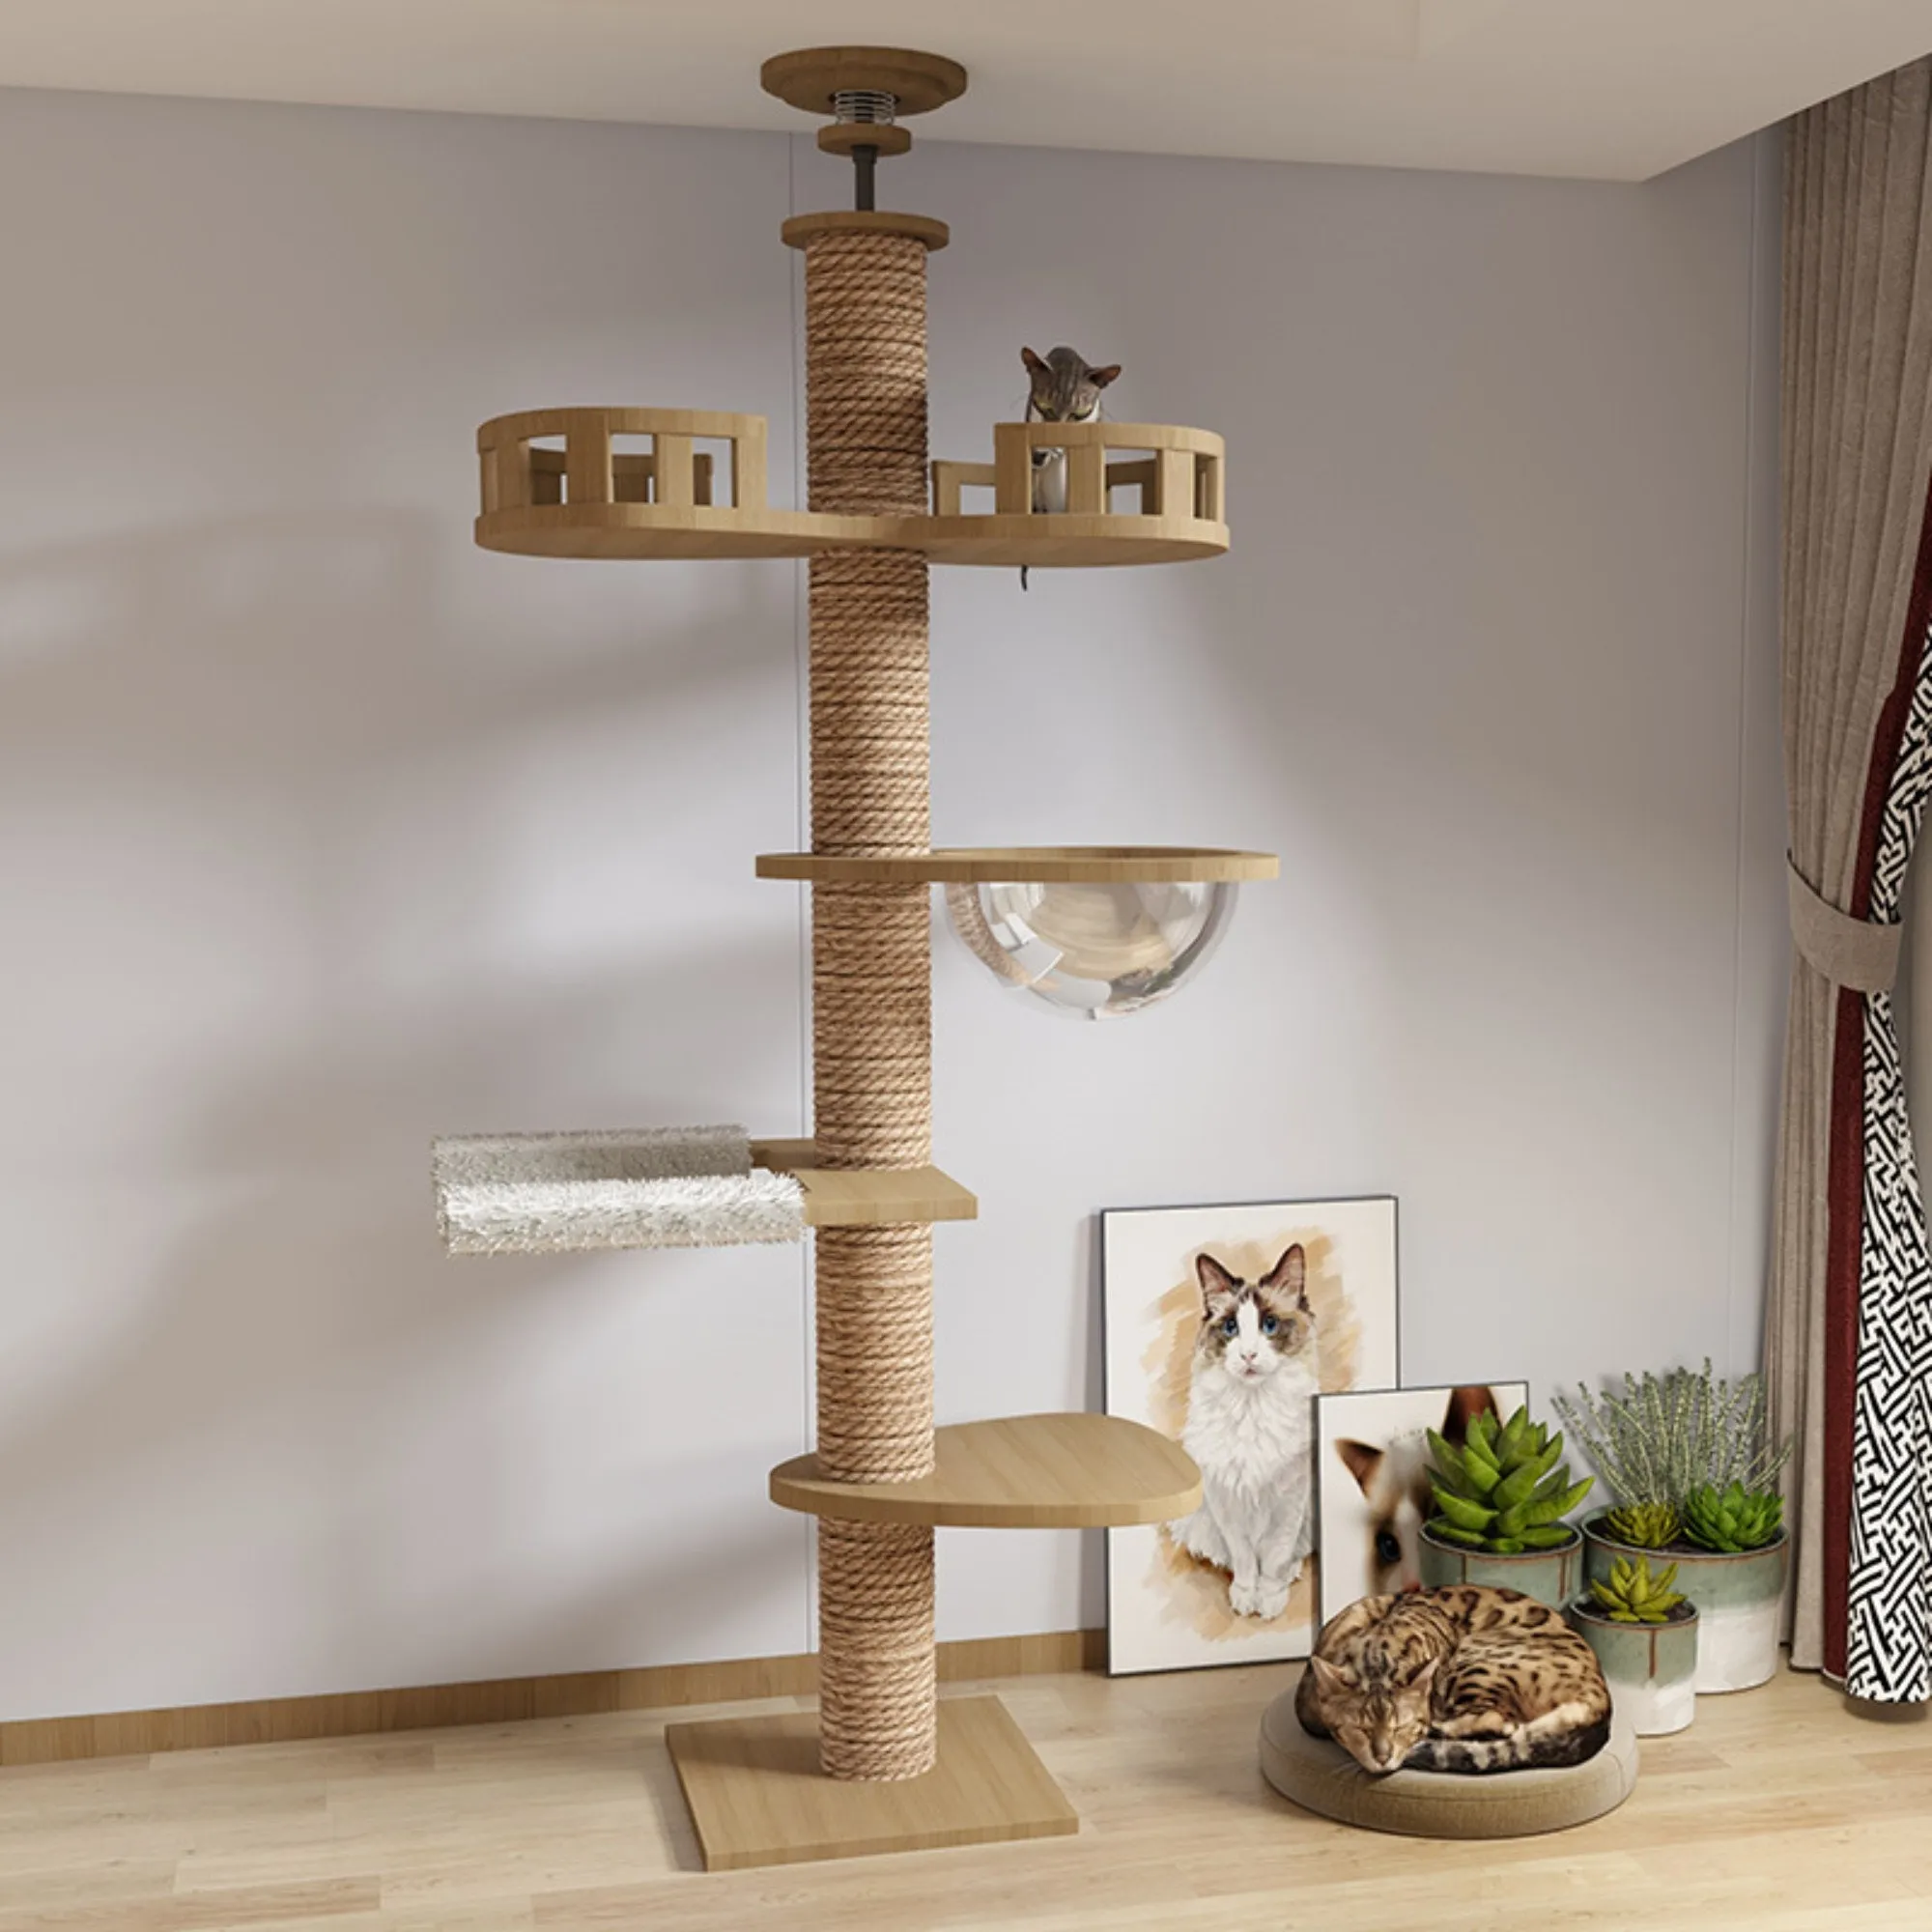 Дерево для кошек от пола до потолка 5-ярусная башня для скалолазания деревянная рама дерево регулируемая высота дерево для кошек потолок